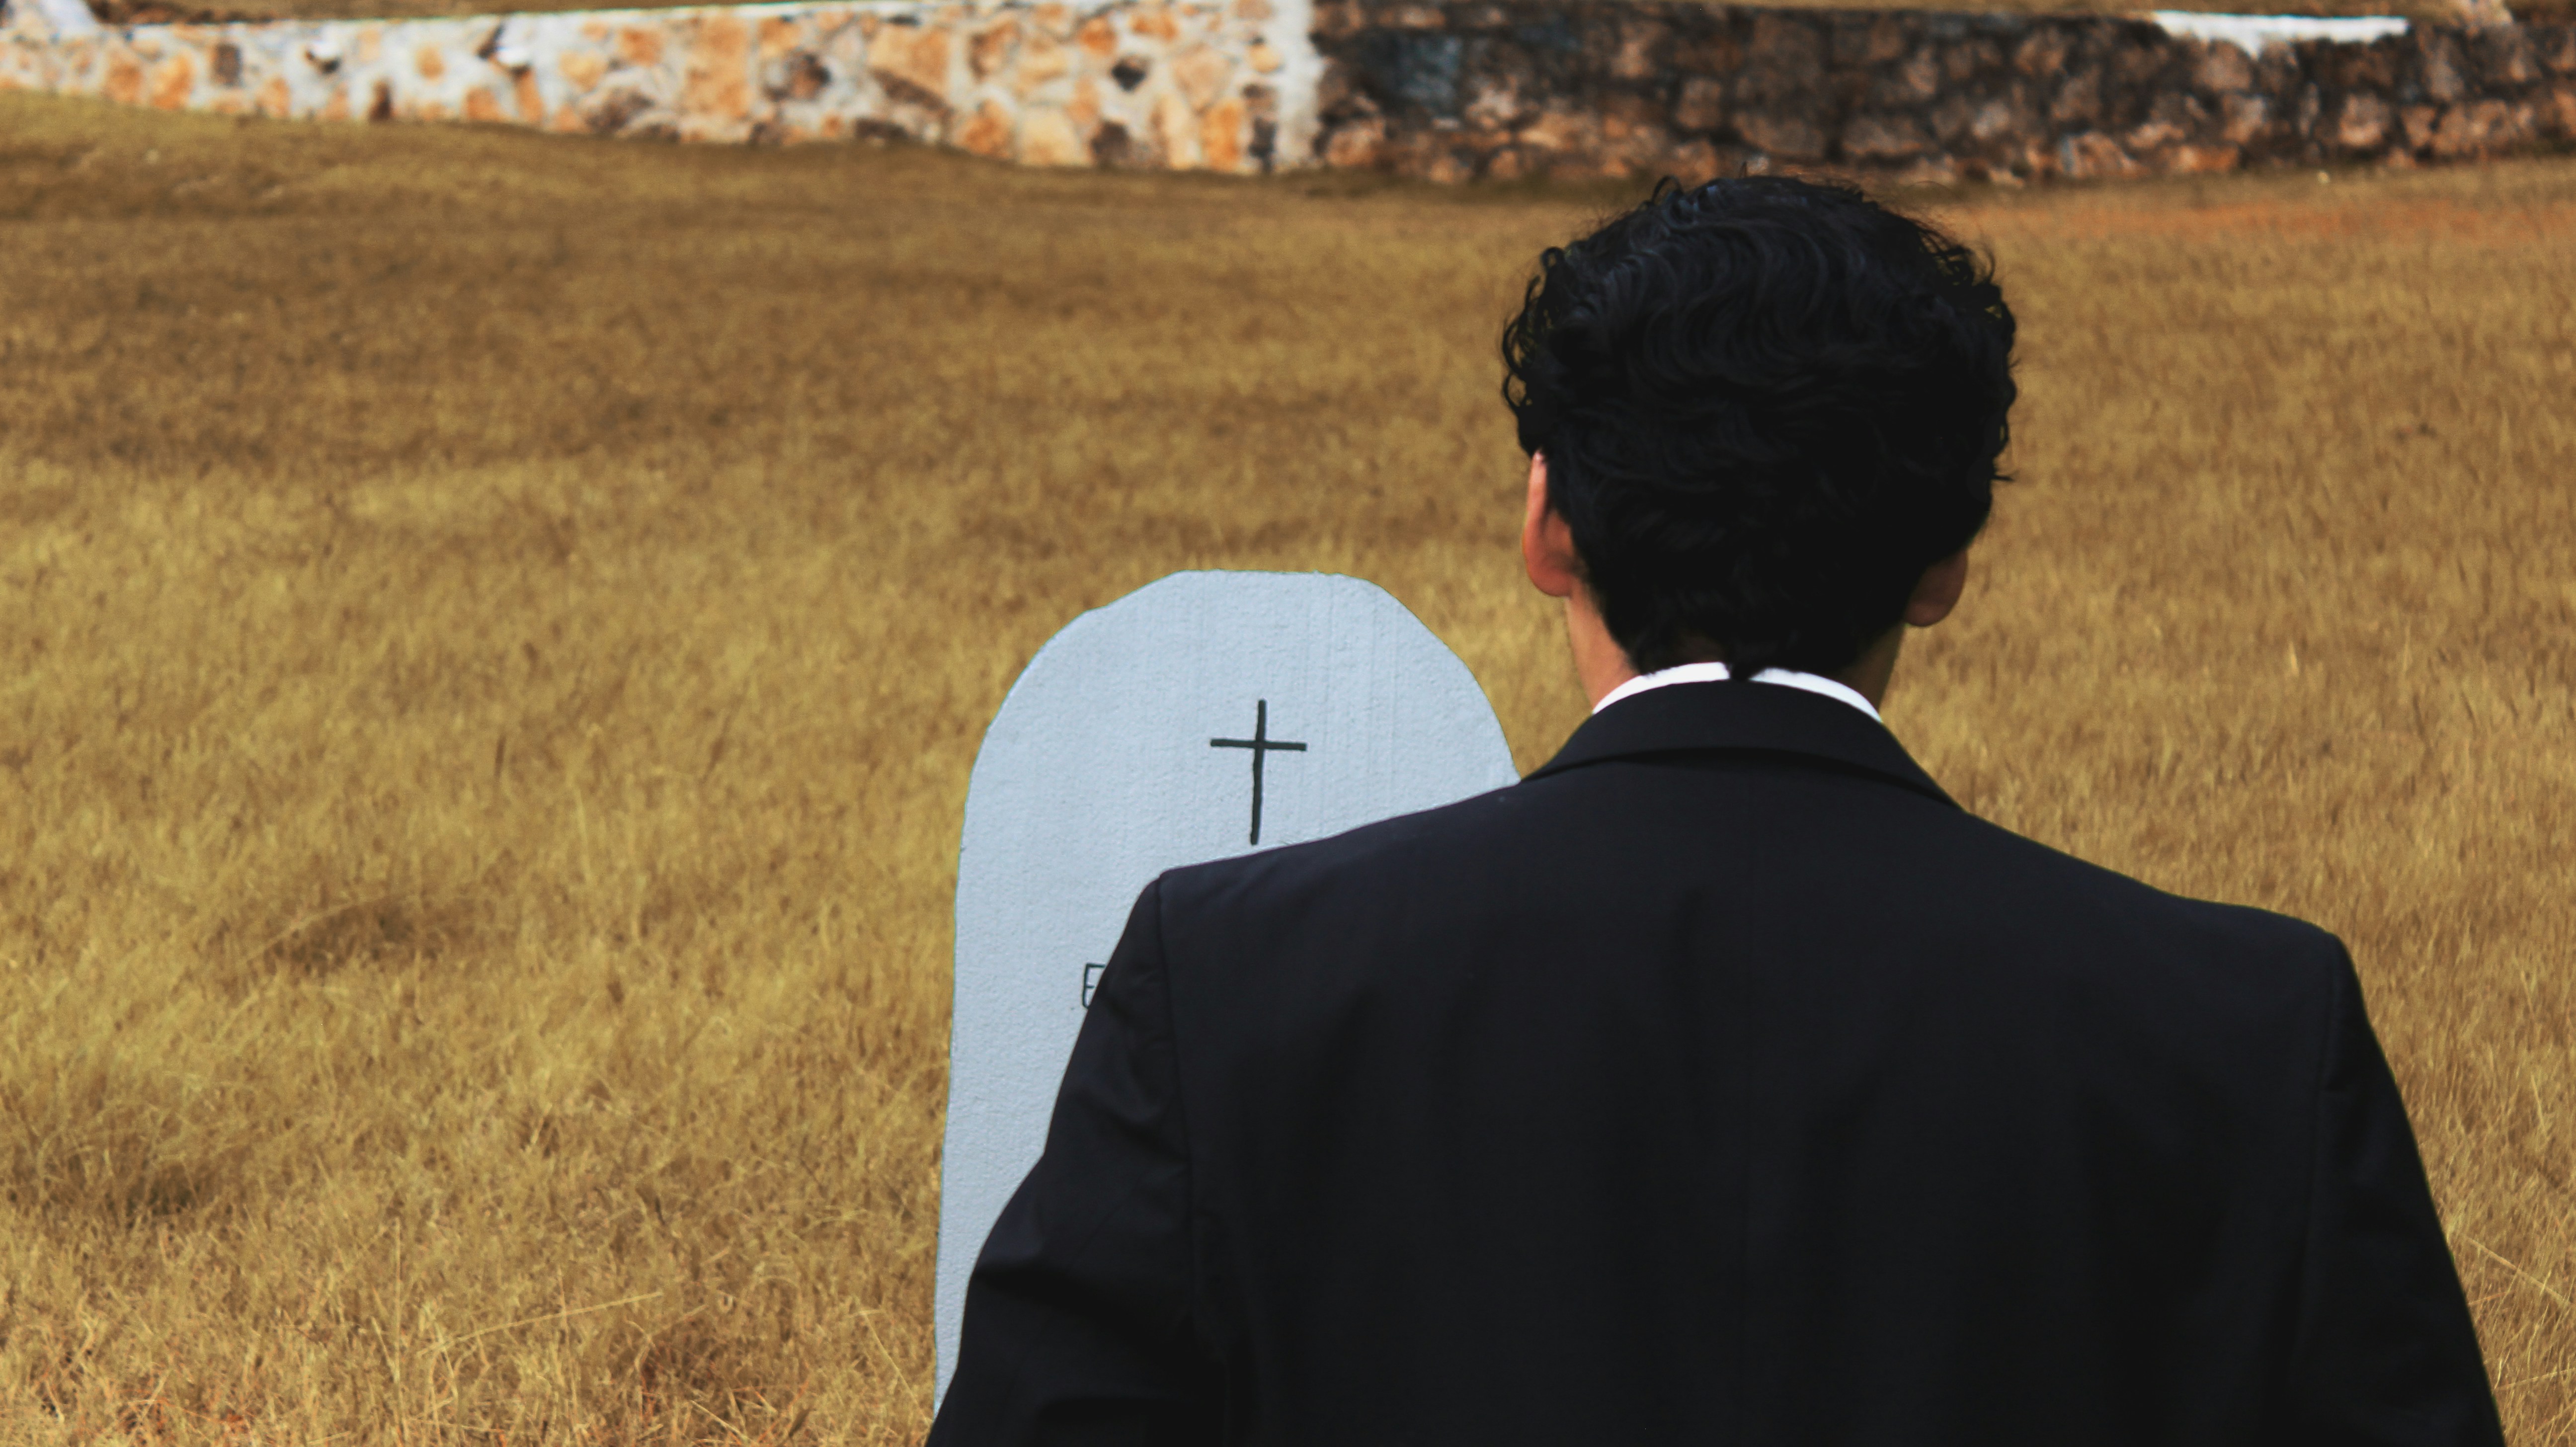 祥辰生命禮儀是一家合法的禮儀服務公司，提供多種殯葬方式和作法，包括土葬、火葬、樹葬和海葬等，以滿足客戶不同的需求和信仰。